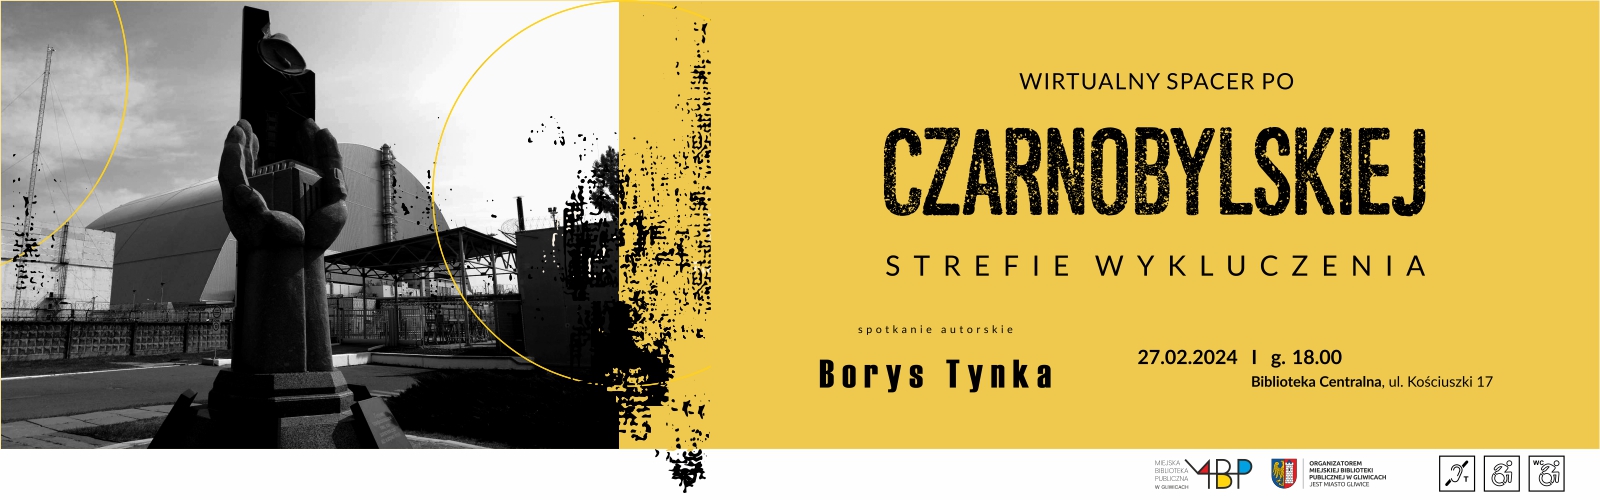 Wirtualny spacer po czarnobylskiej strefie wykluczenia – Borys Tynka – spotkanie autorskie